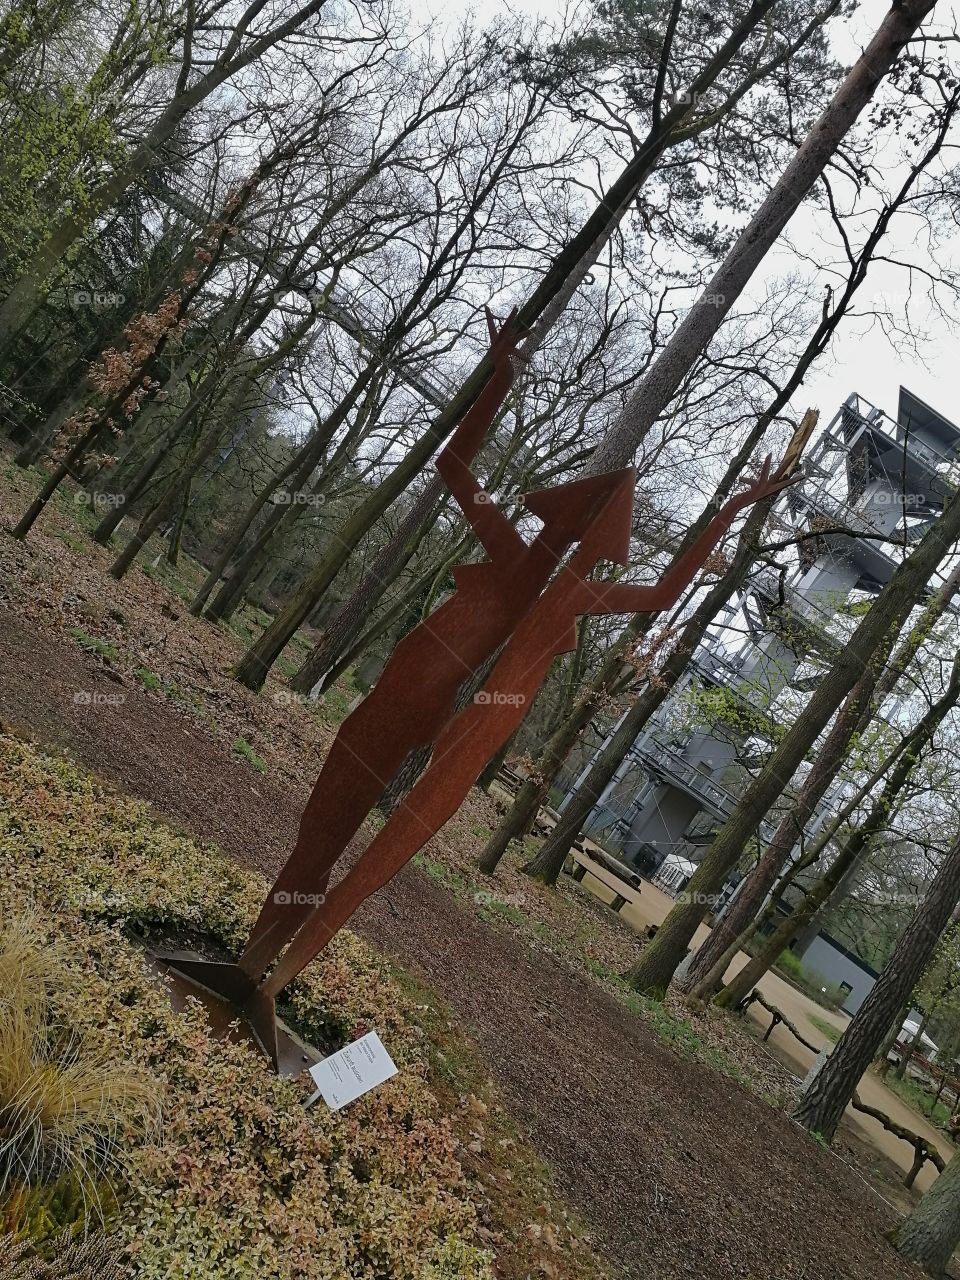 Sculpture in Beelitz